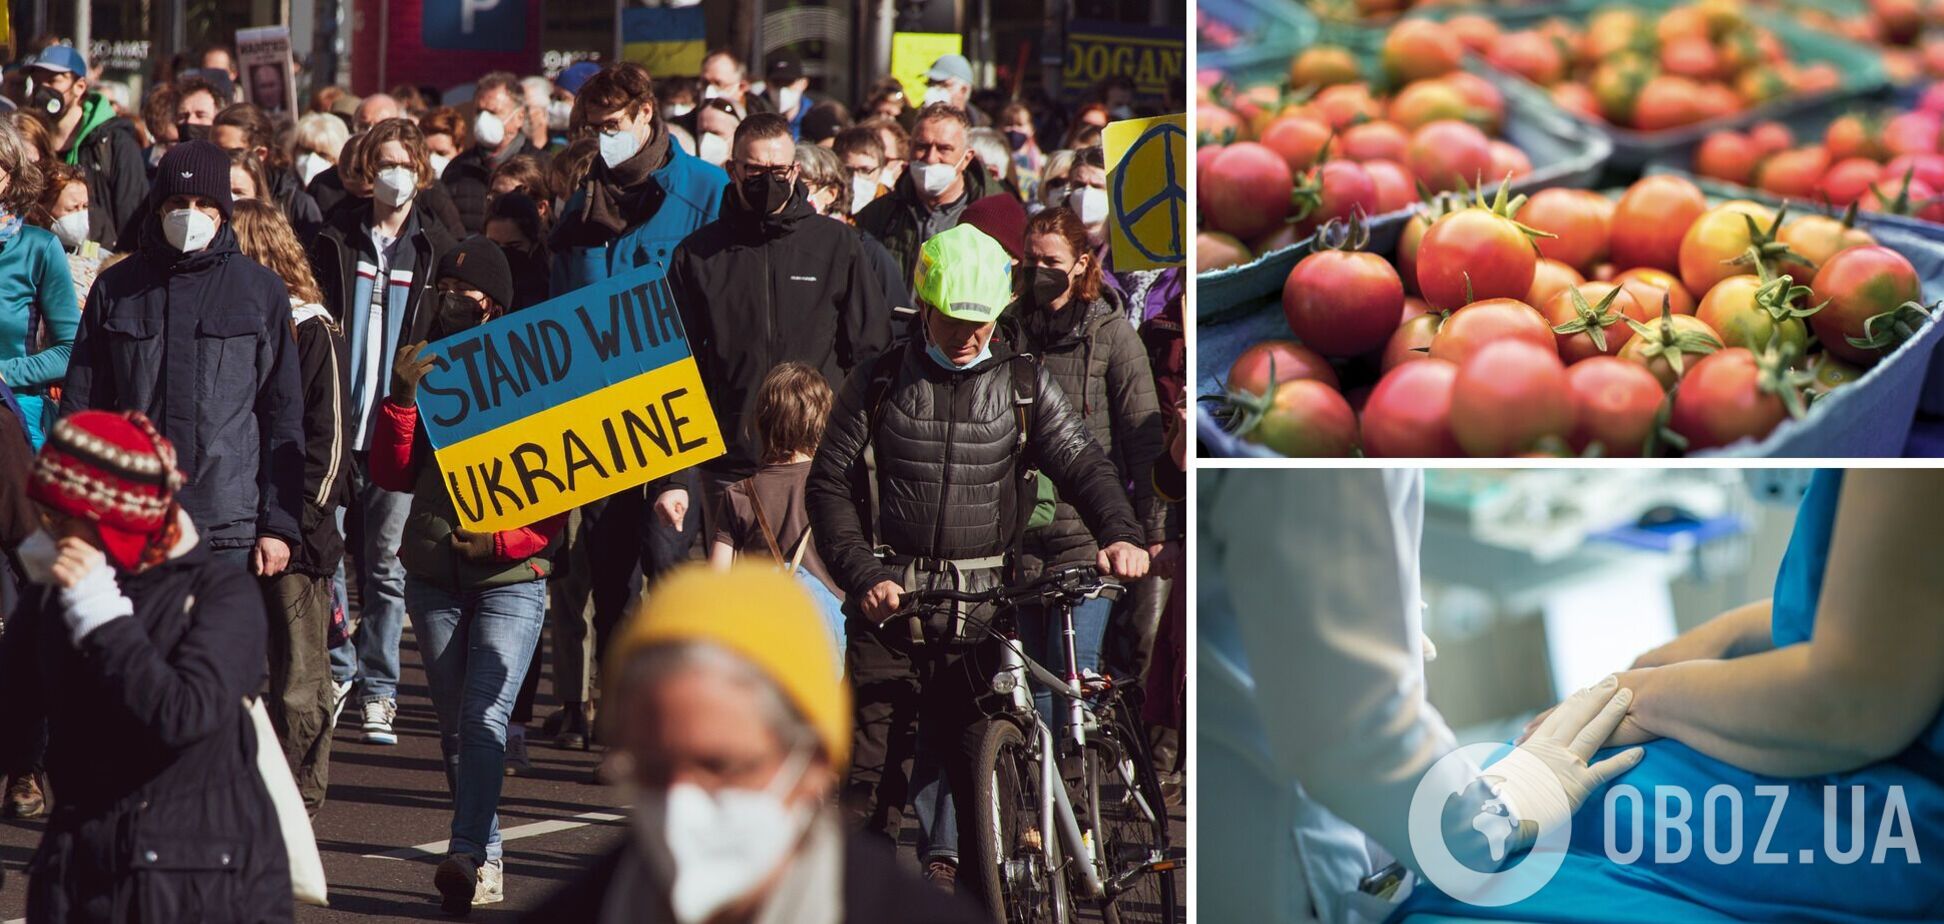 Дорога їжа, черги до лікарів і бюрократія. На що скаржаться українські біженці в Європі